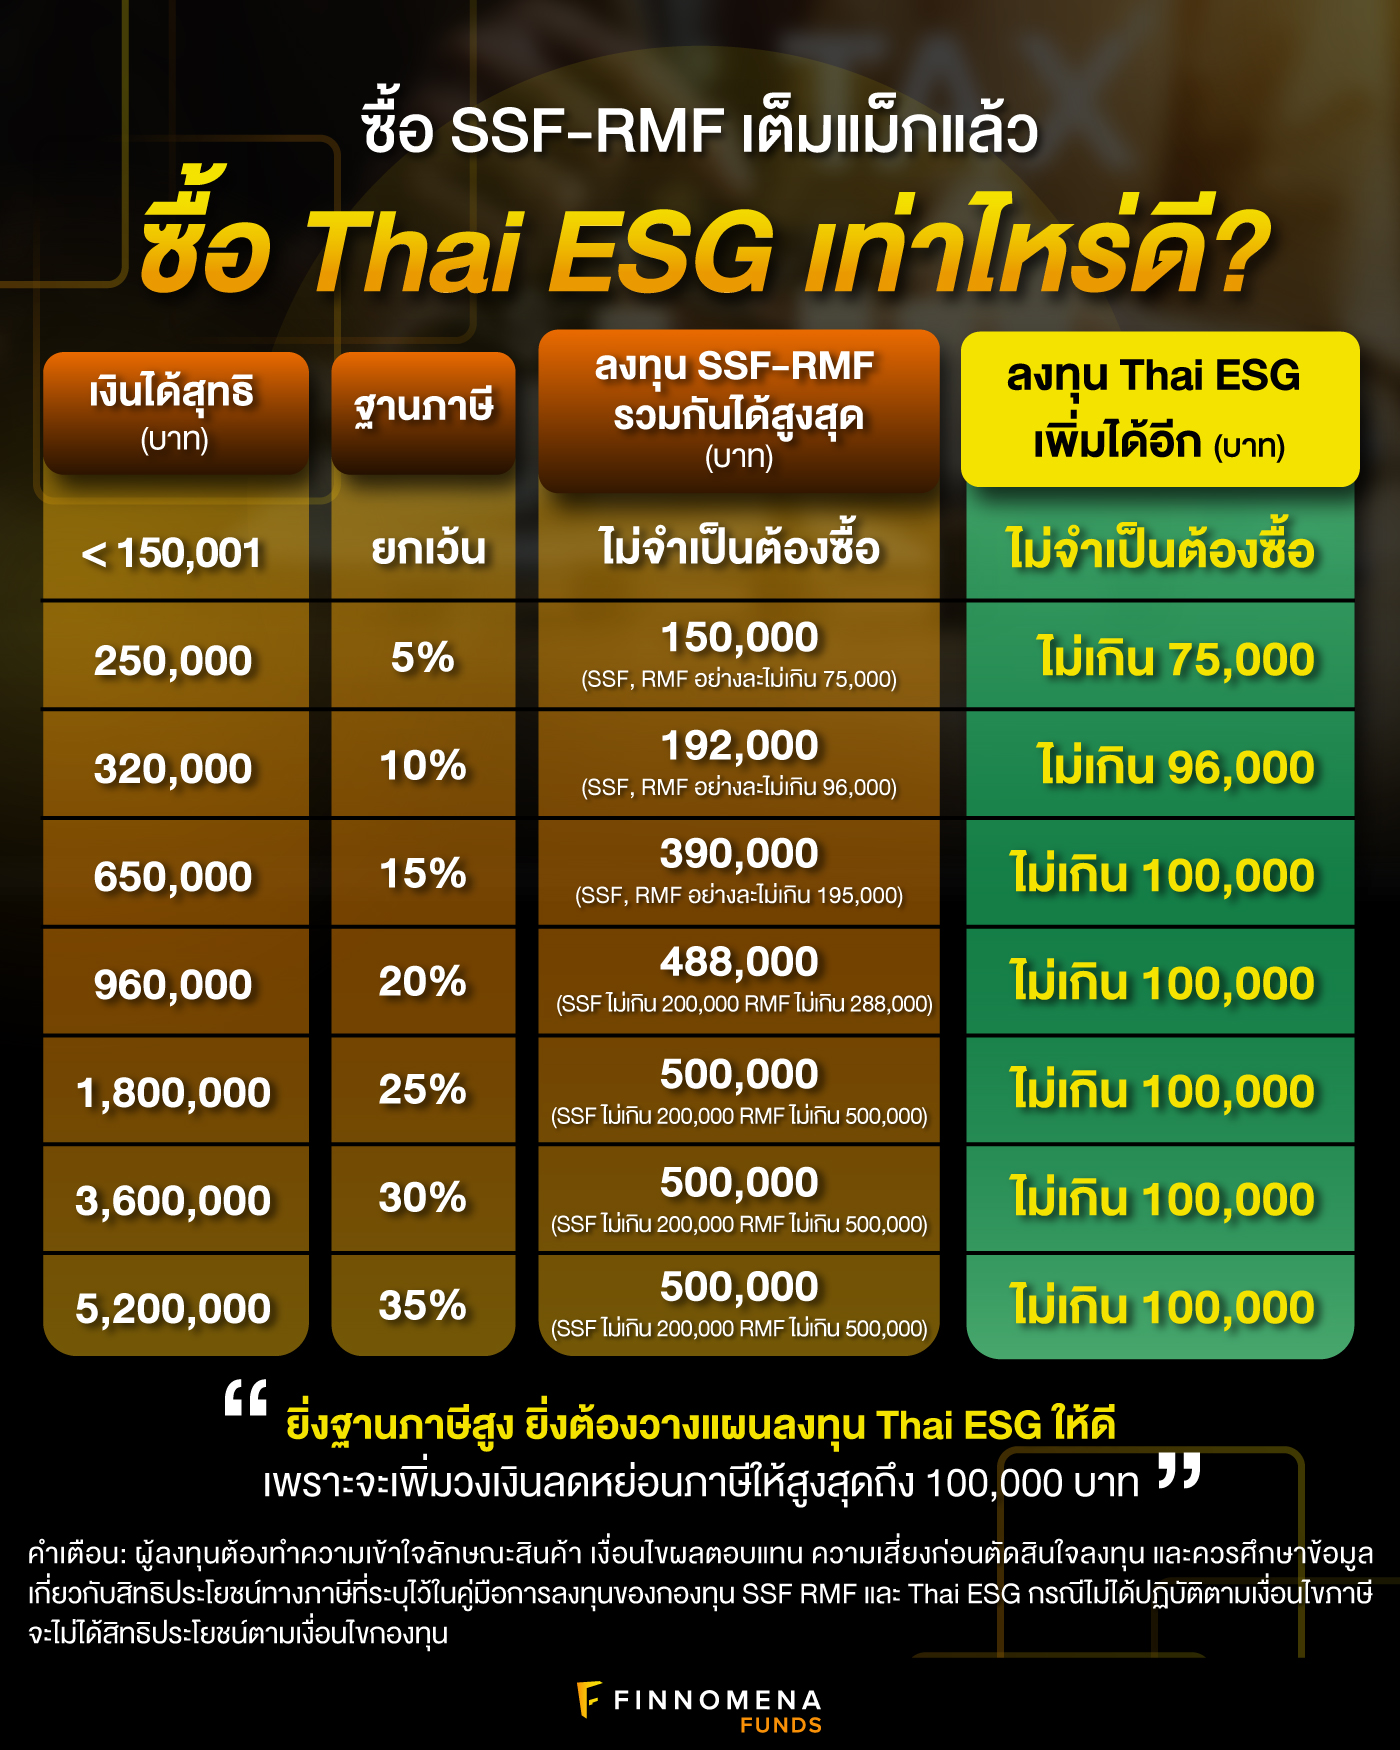 ซื้อกองทุน Thai ESG เท่าไหร่ดี